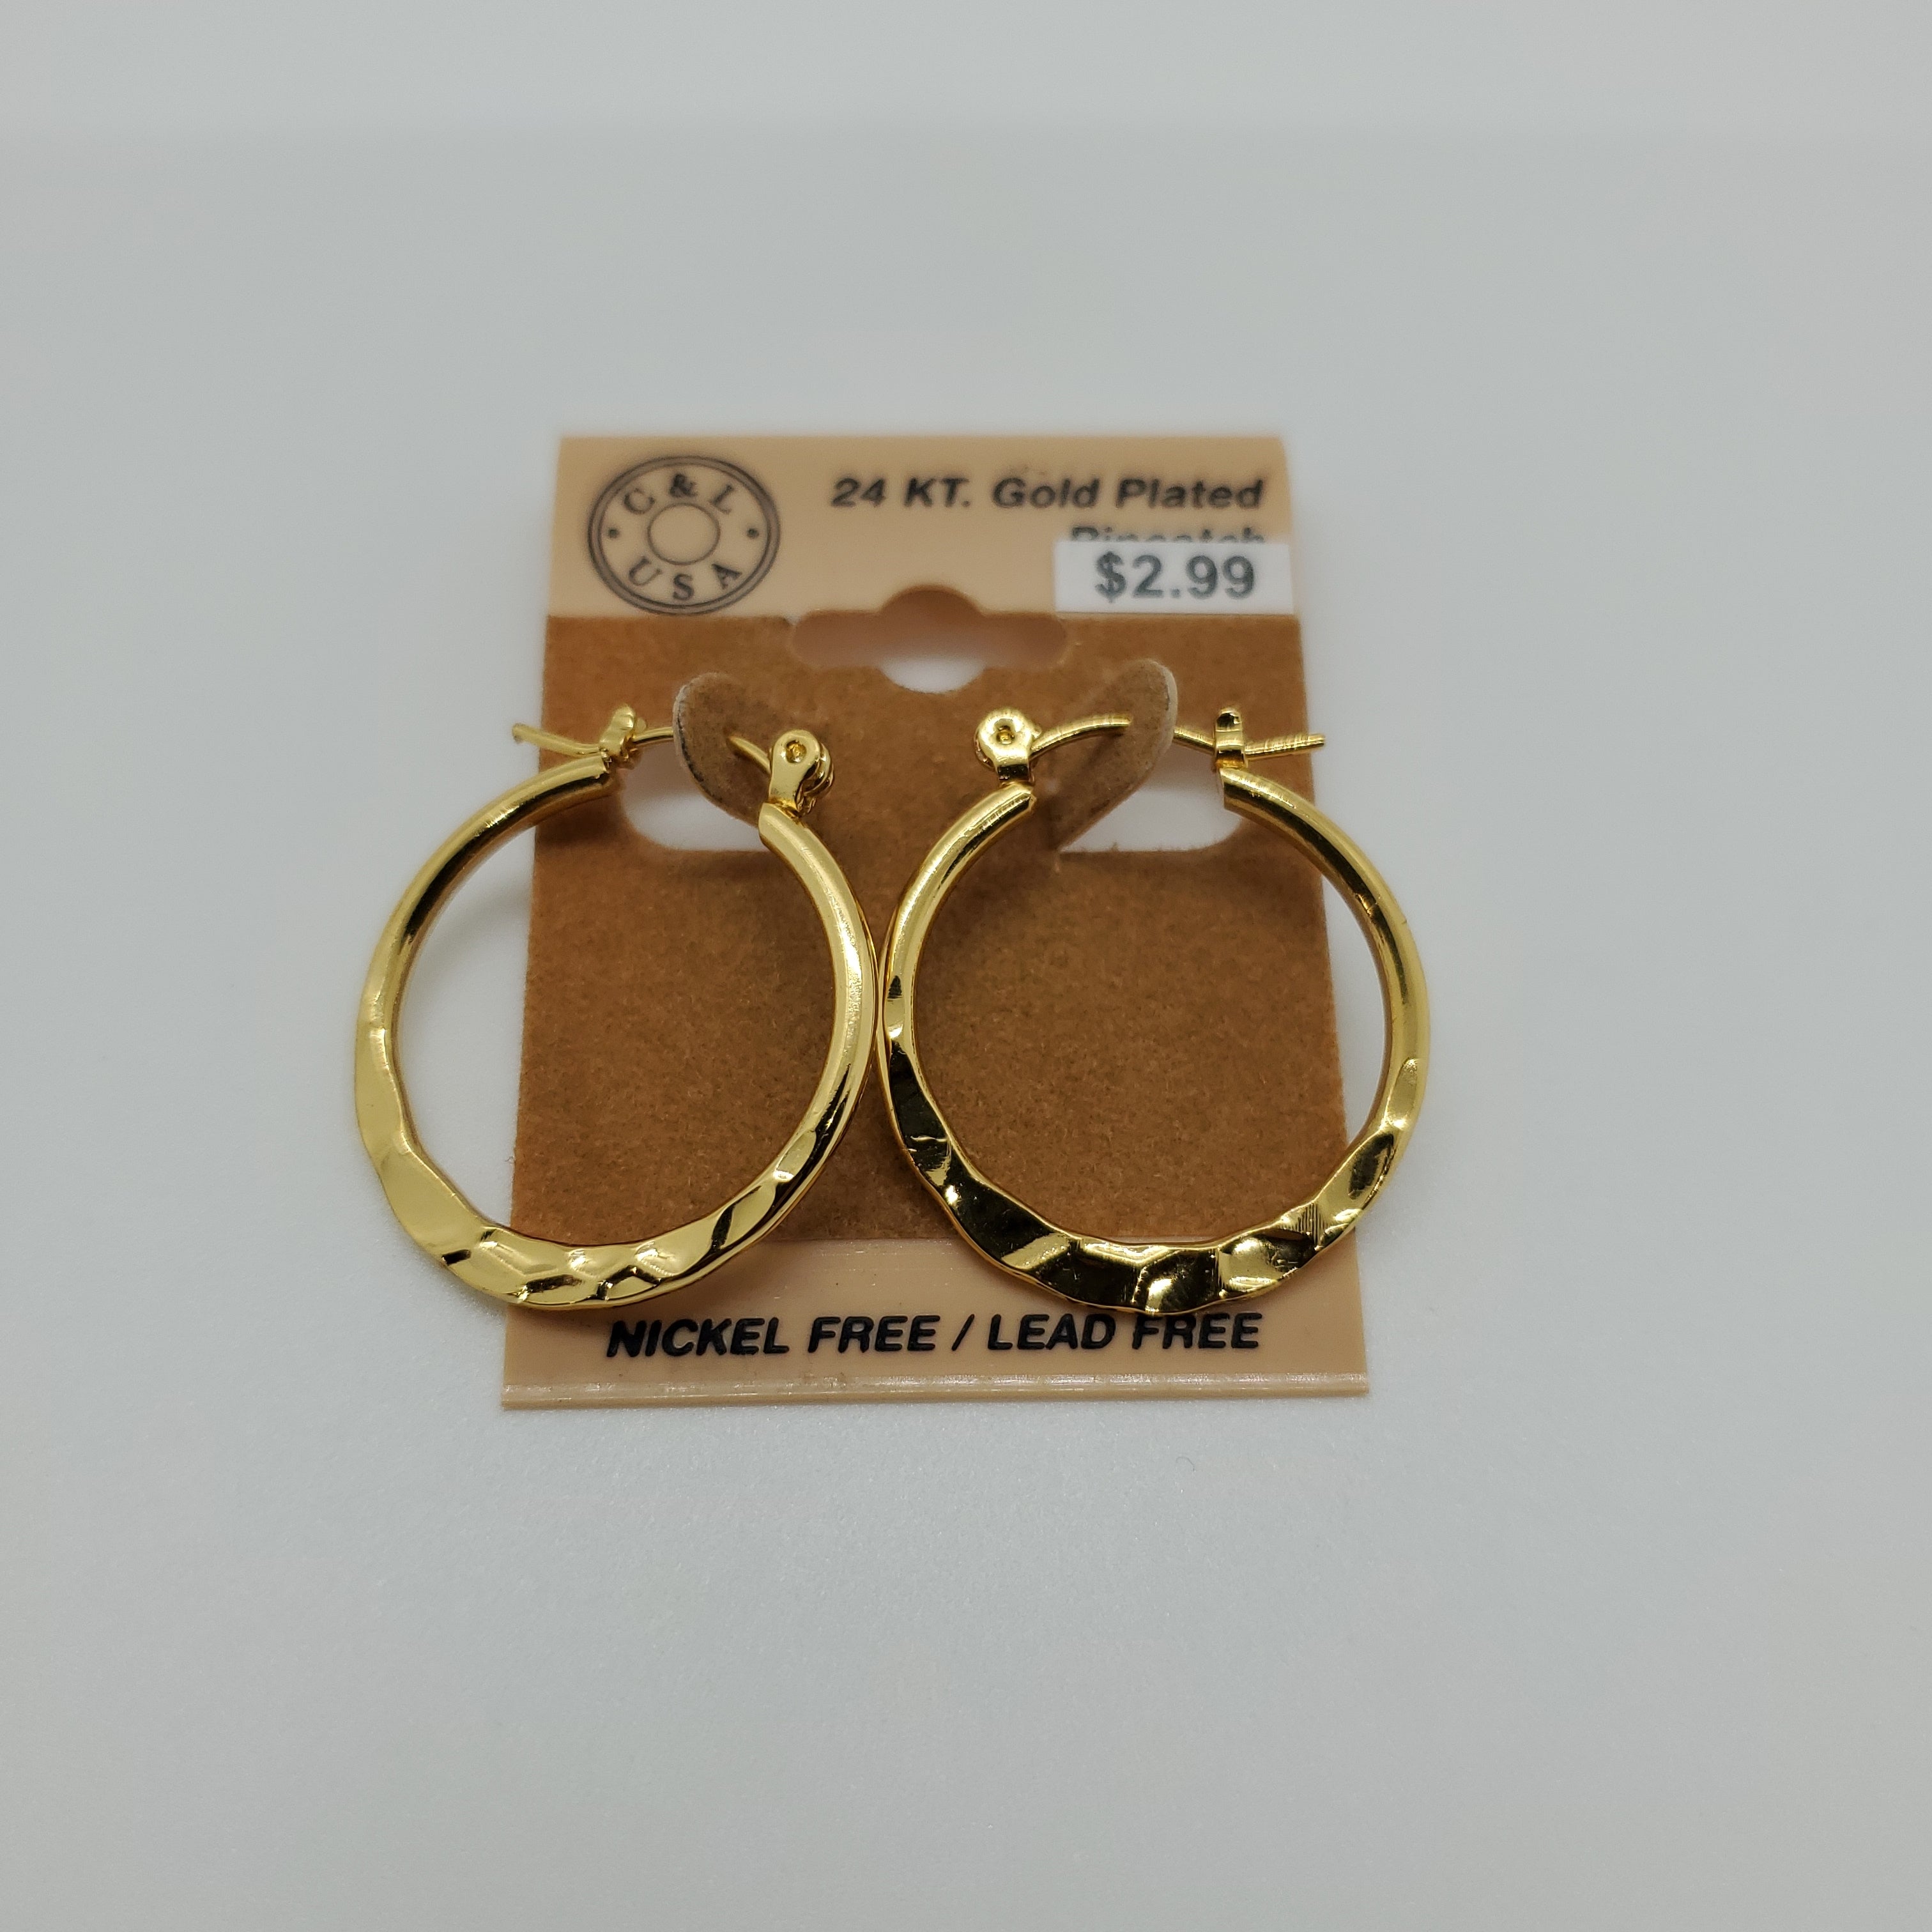 24KT Gold Plated Pincatch Hoop Earrings NPK118 - Beauty Bar & Supply